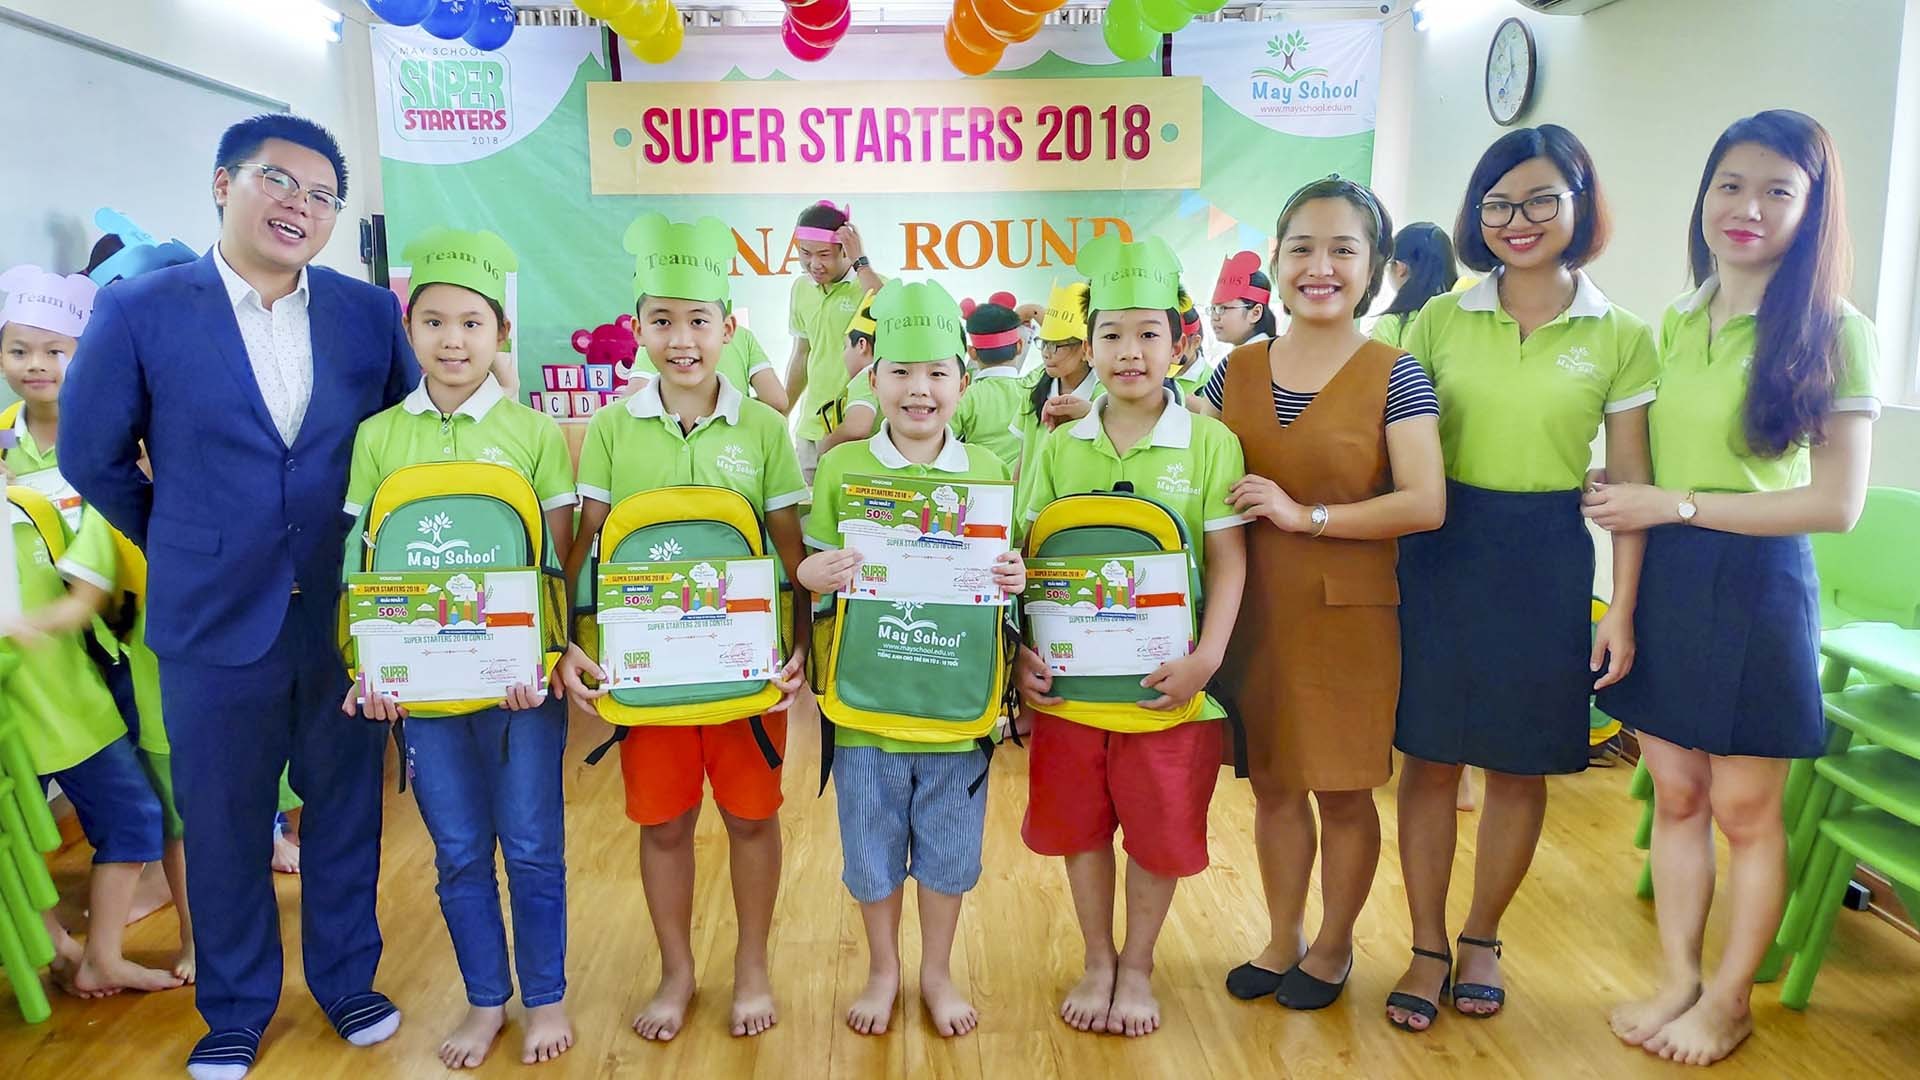 May School Hà Nội – trung tâm tiếng Anh cho trẻ em từ 5 đến 15 tuổi